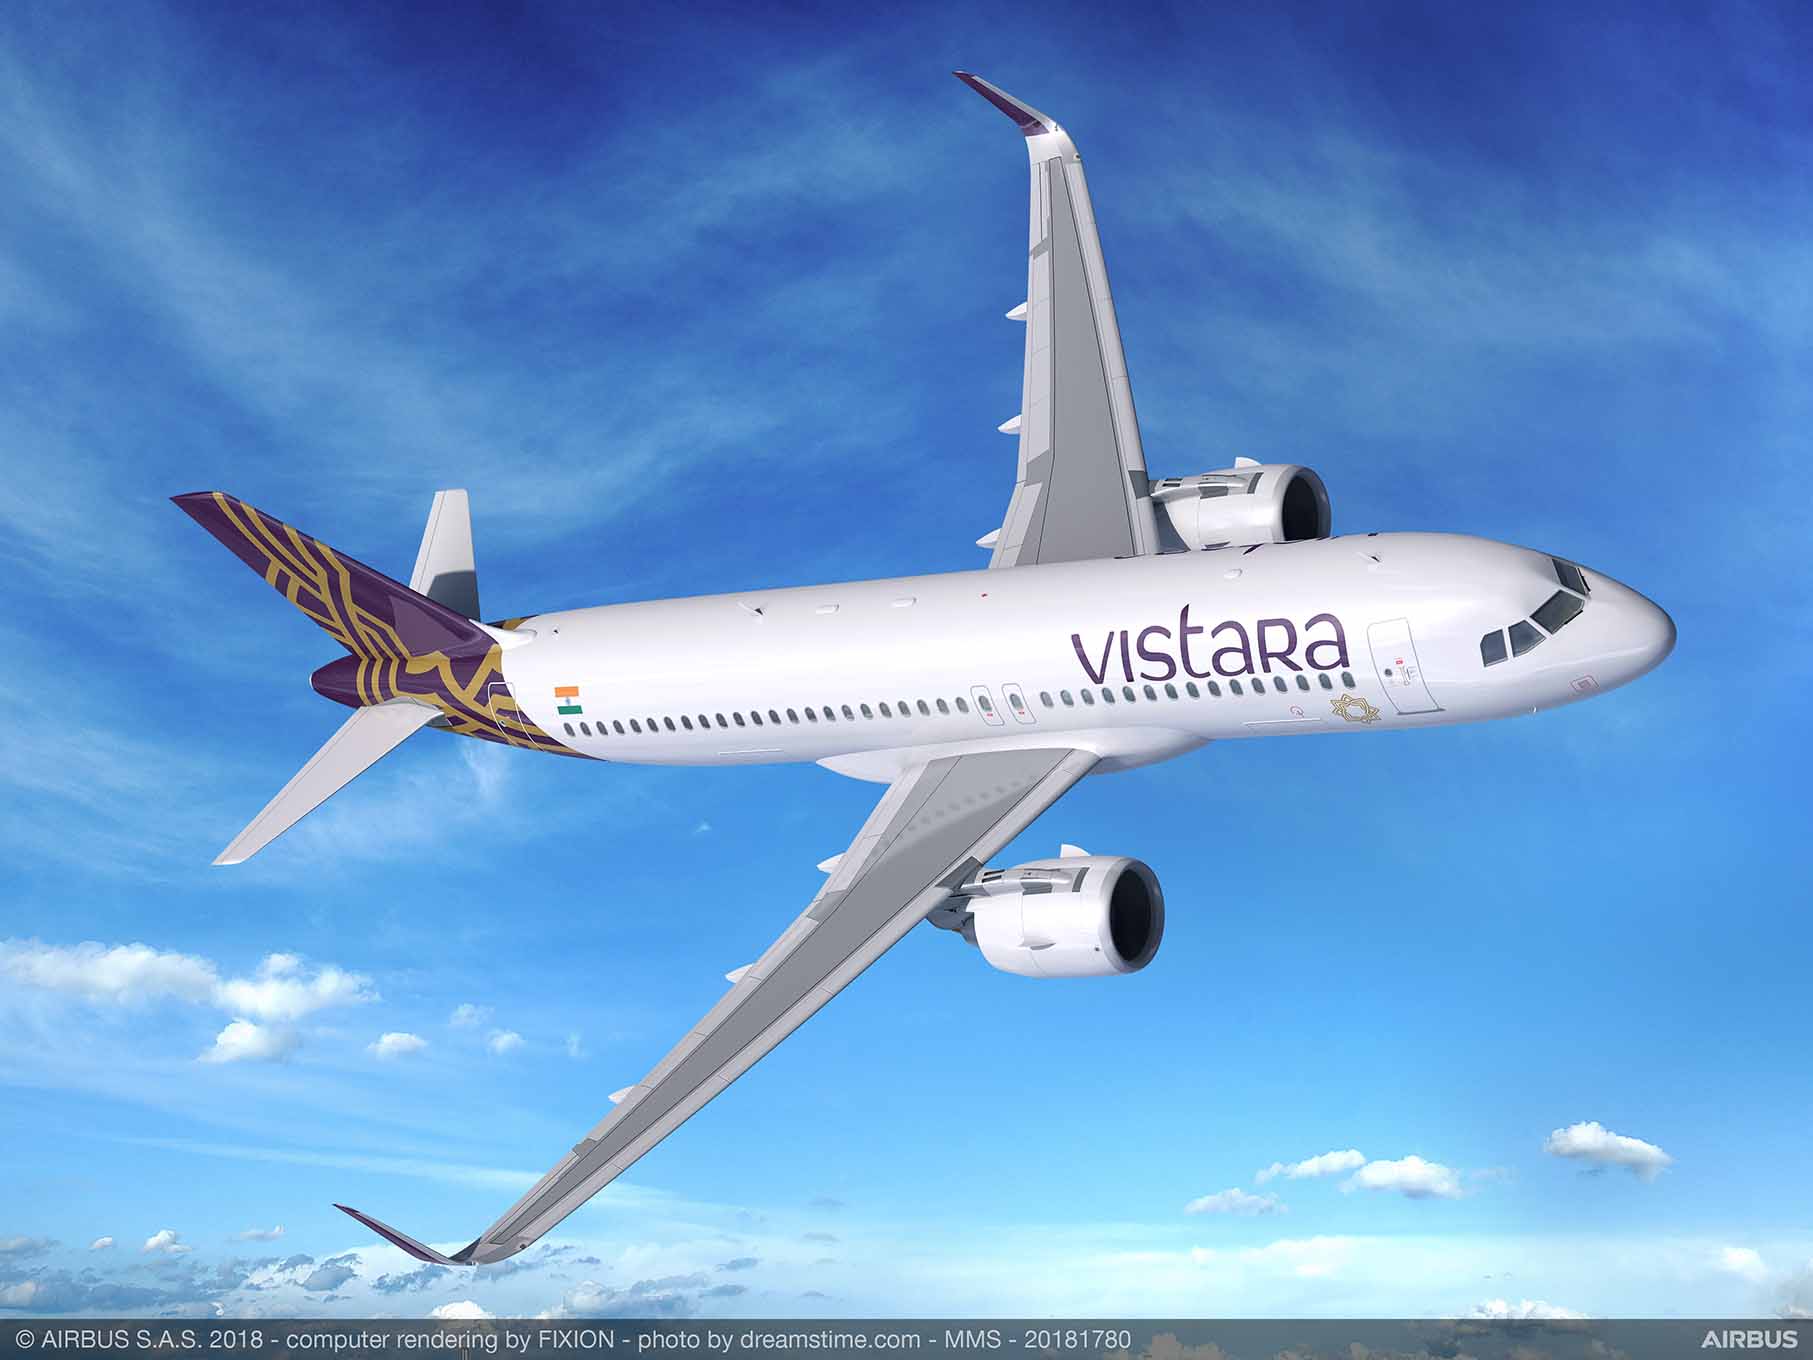 Avolon places 15 A320neos with Vistara